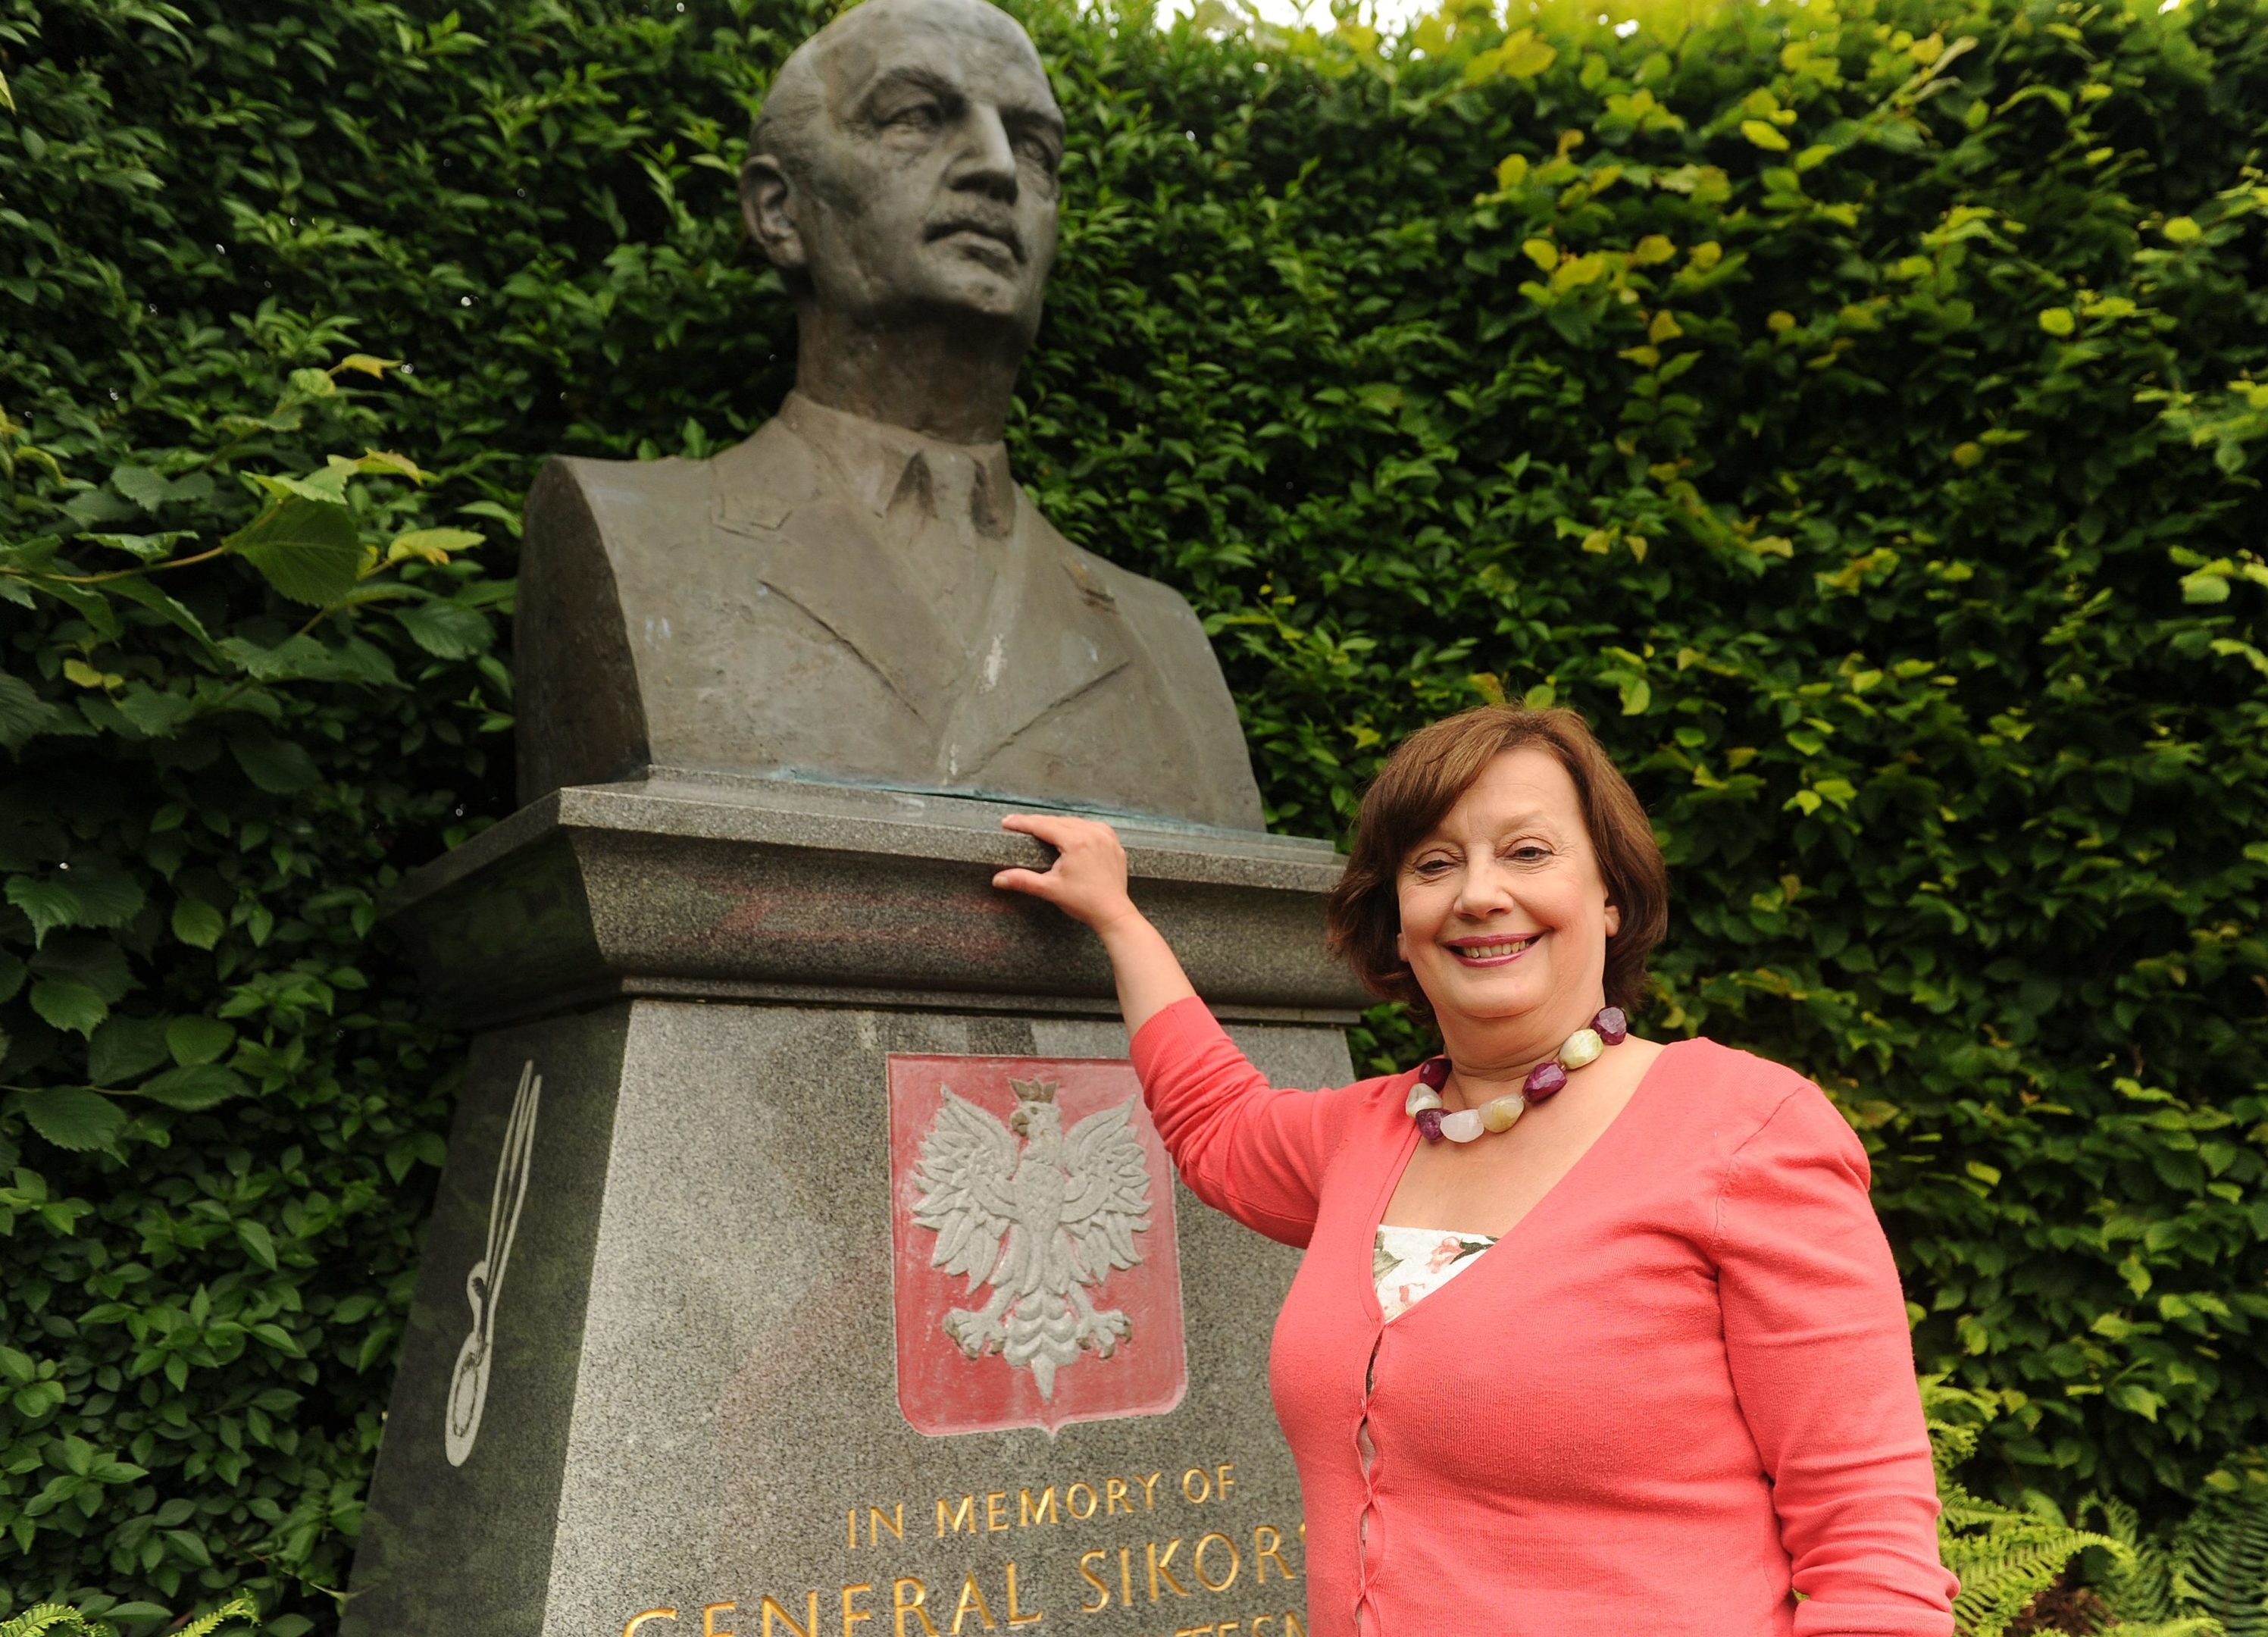 Polish-raised Violeta Ilendo at the General Sikorski statue in Kinburn Park, St Andrews, in 2017